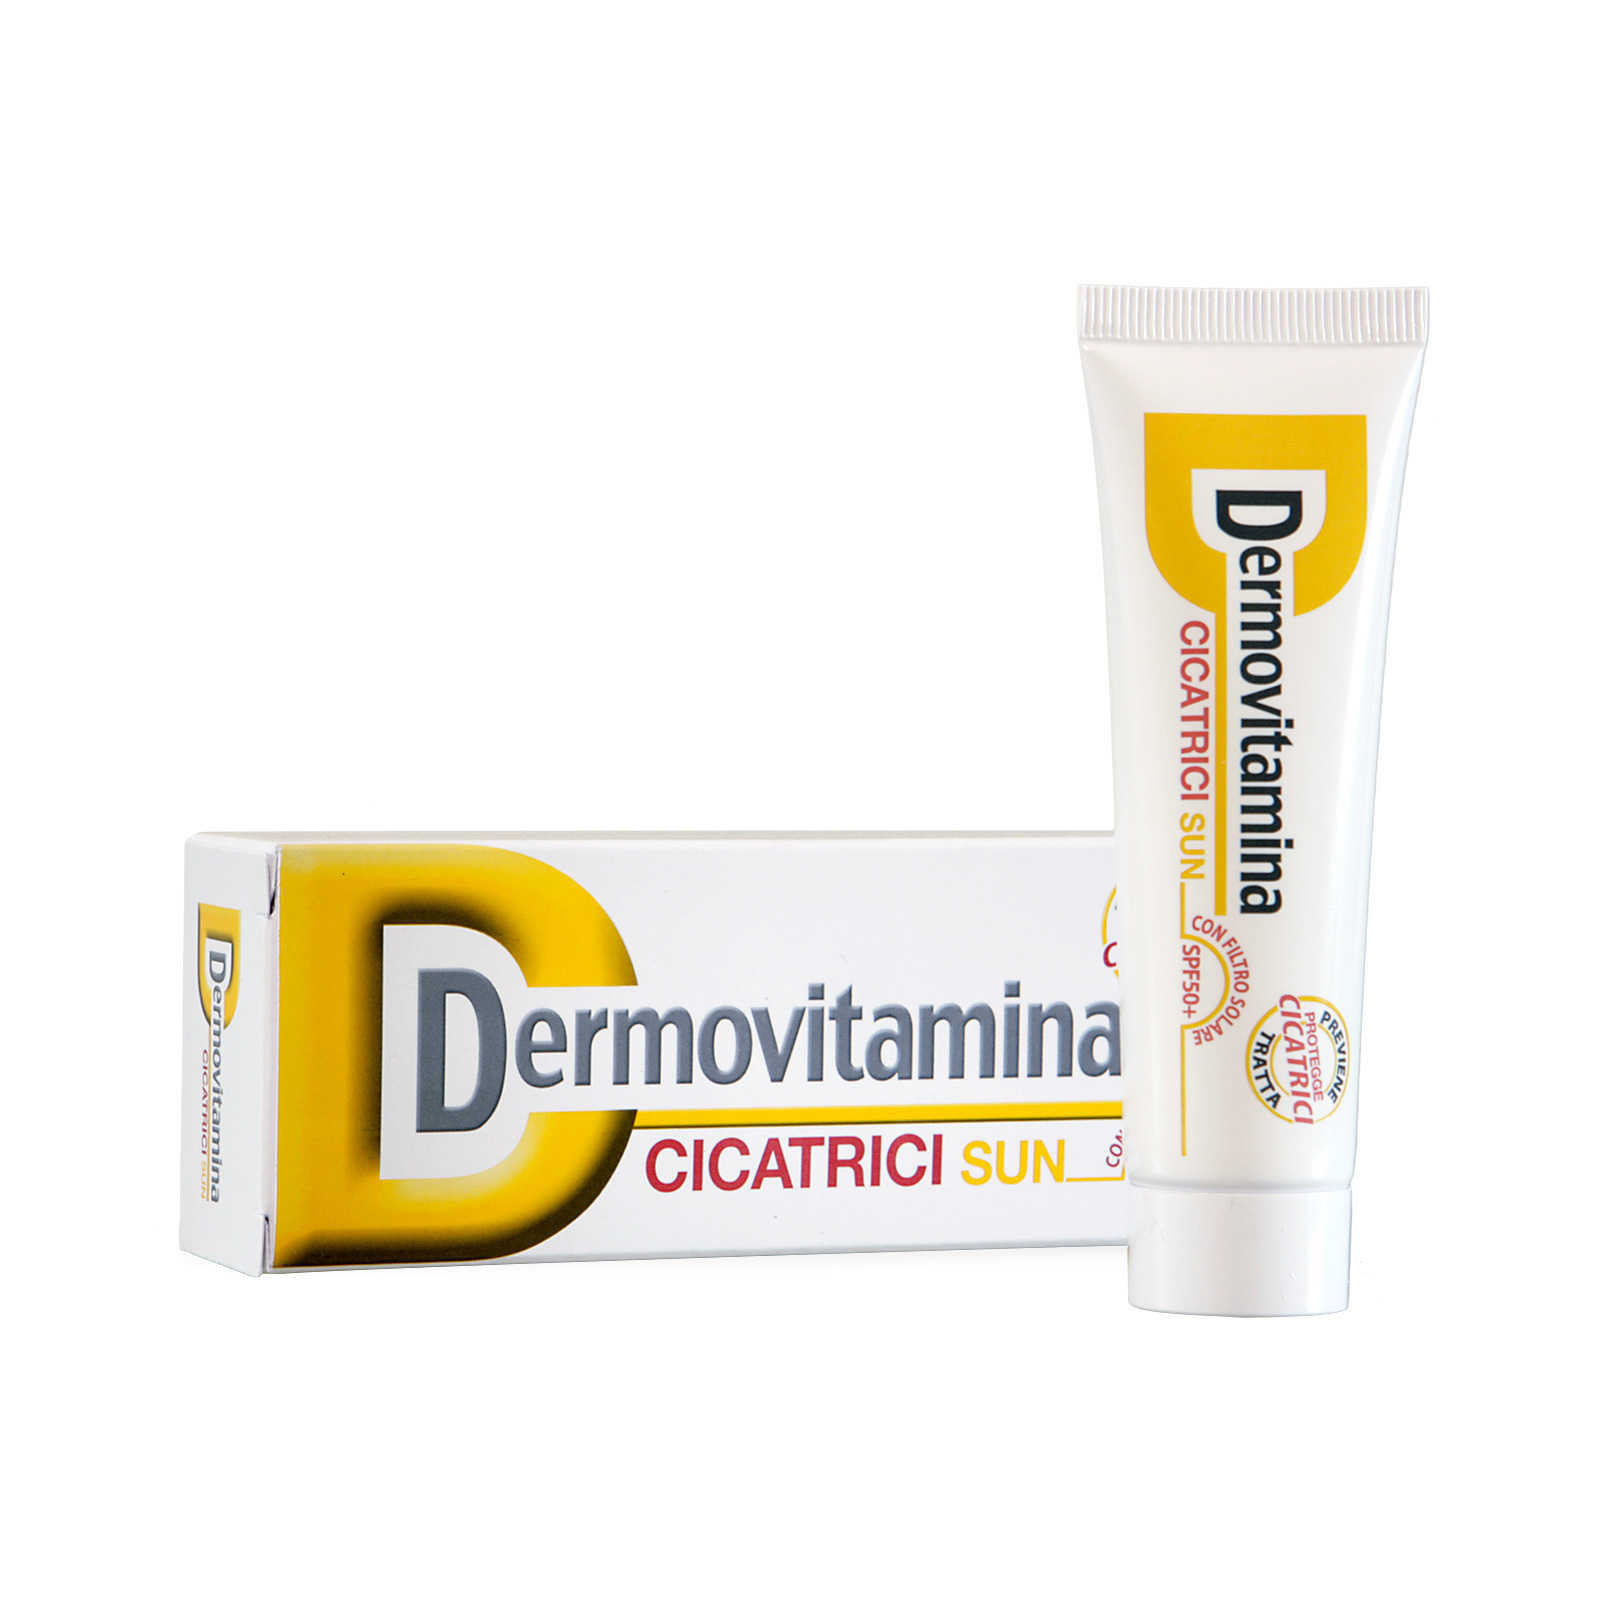 Dermovitamina - Cicatrici Sun - Protegge le cicatrici